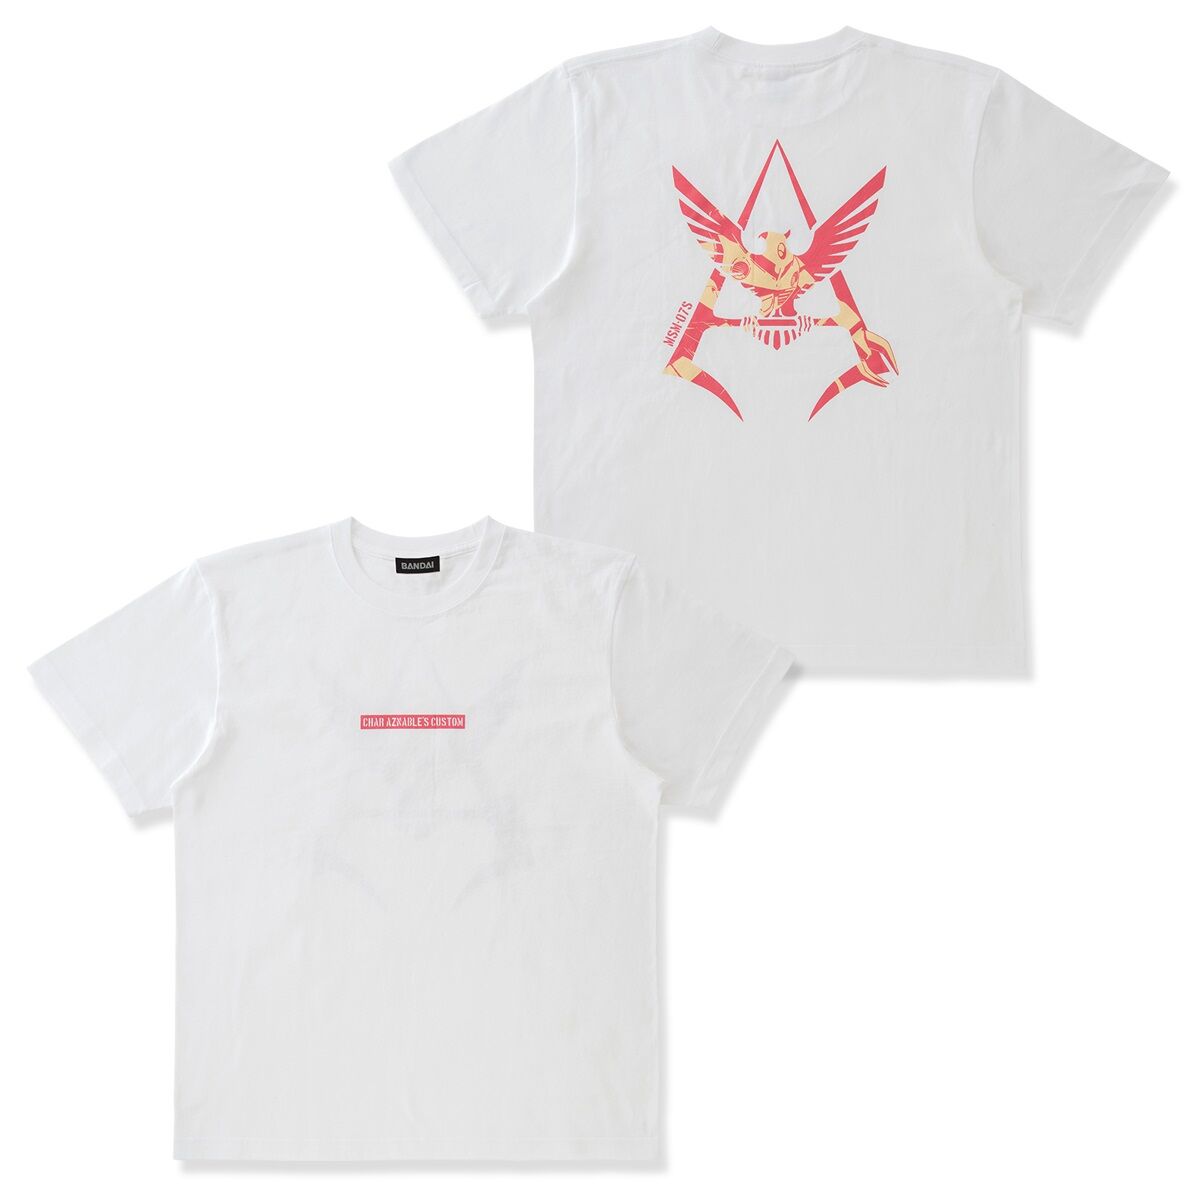 Mobile Suit Inlaid Char Emblem T-shirt—Mobile Suit Gundam